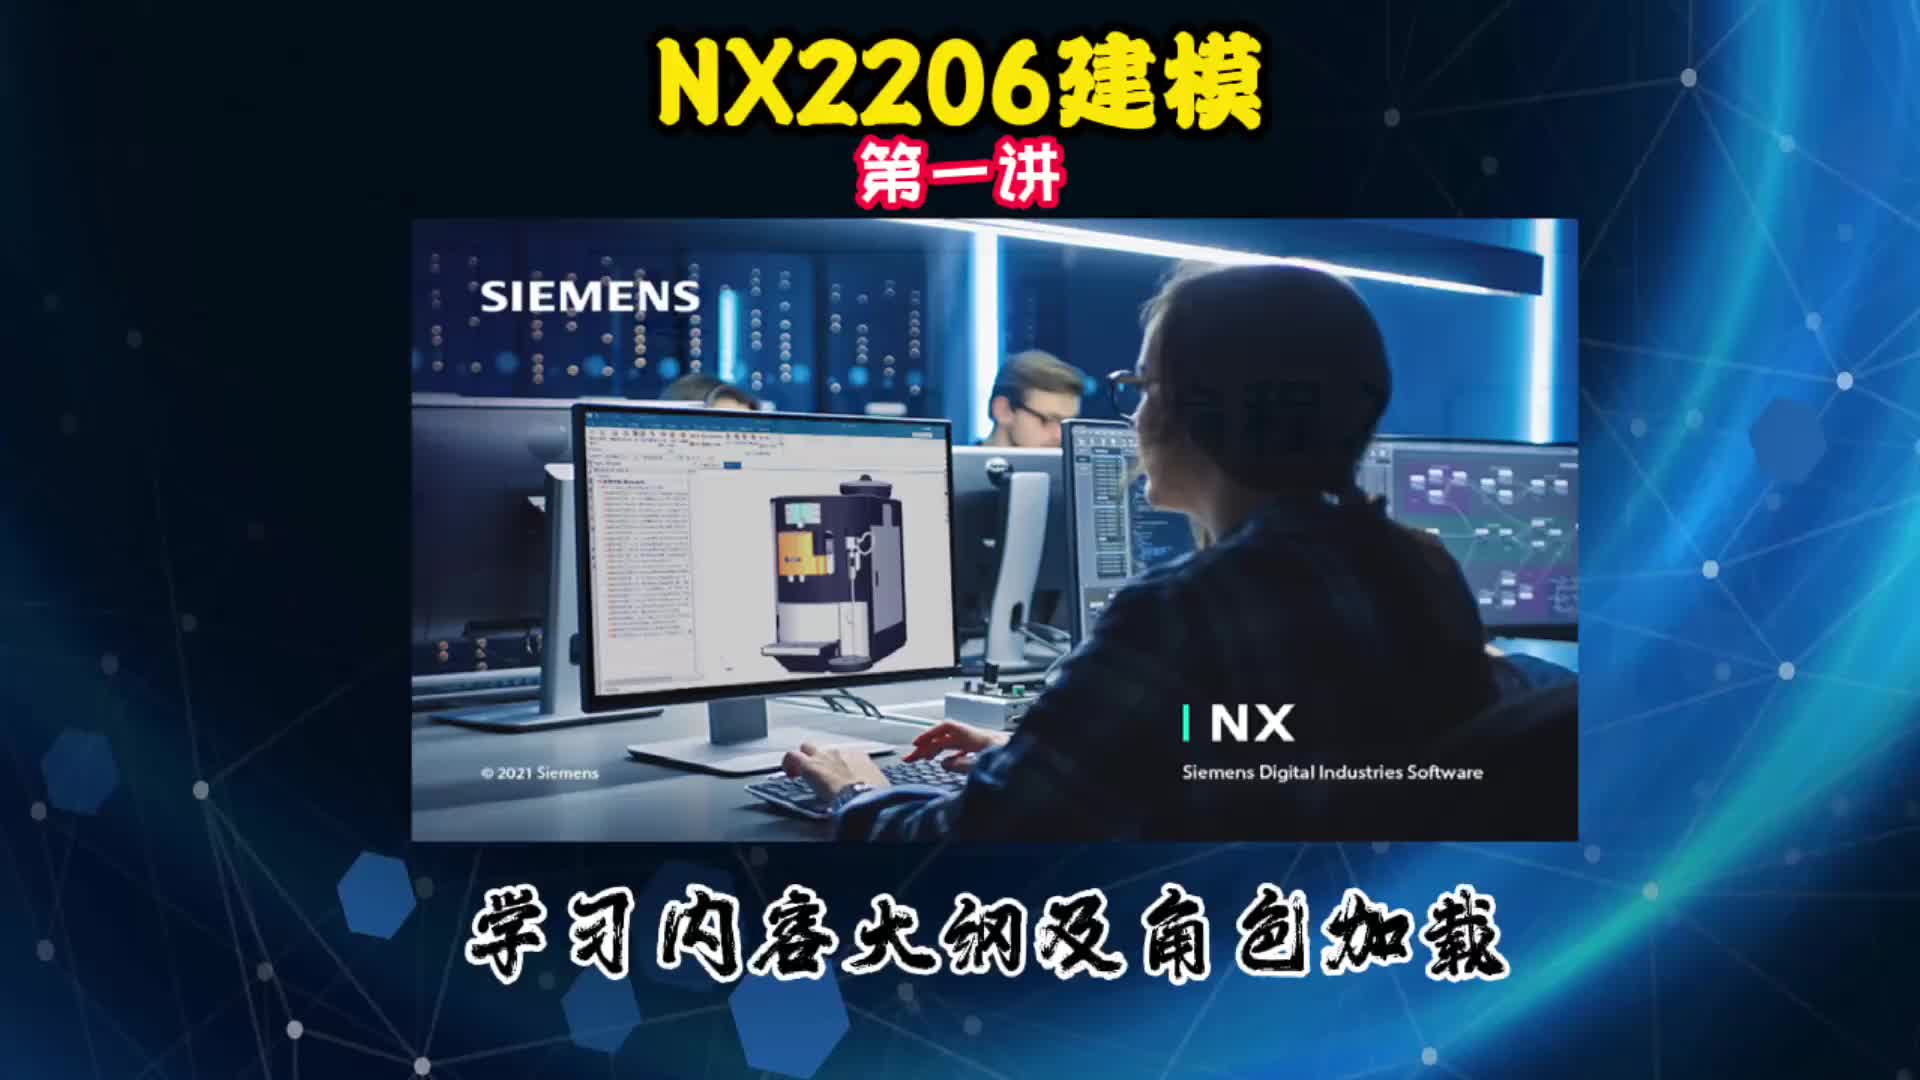 NX2206建模—学习内容大纲及角色加载